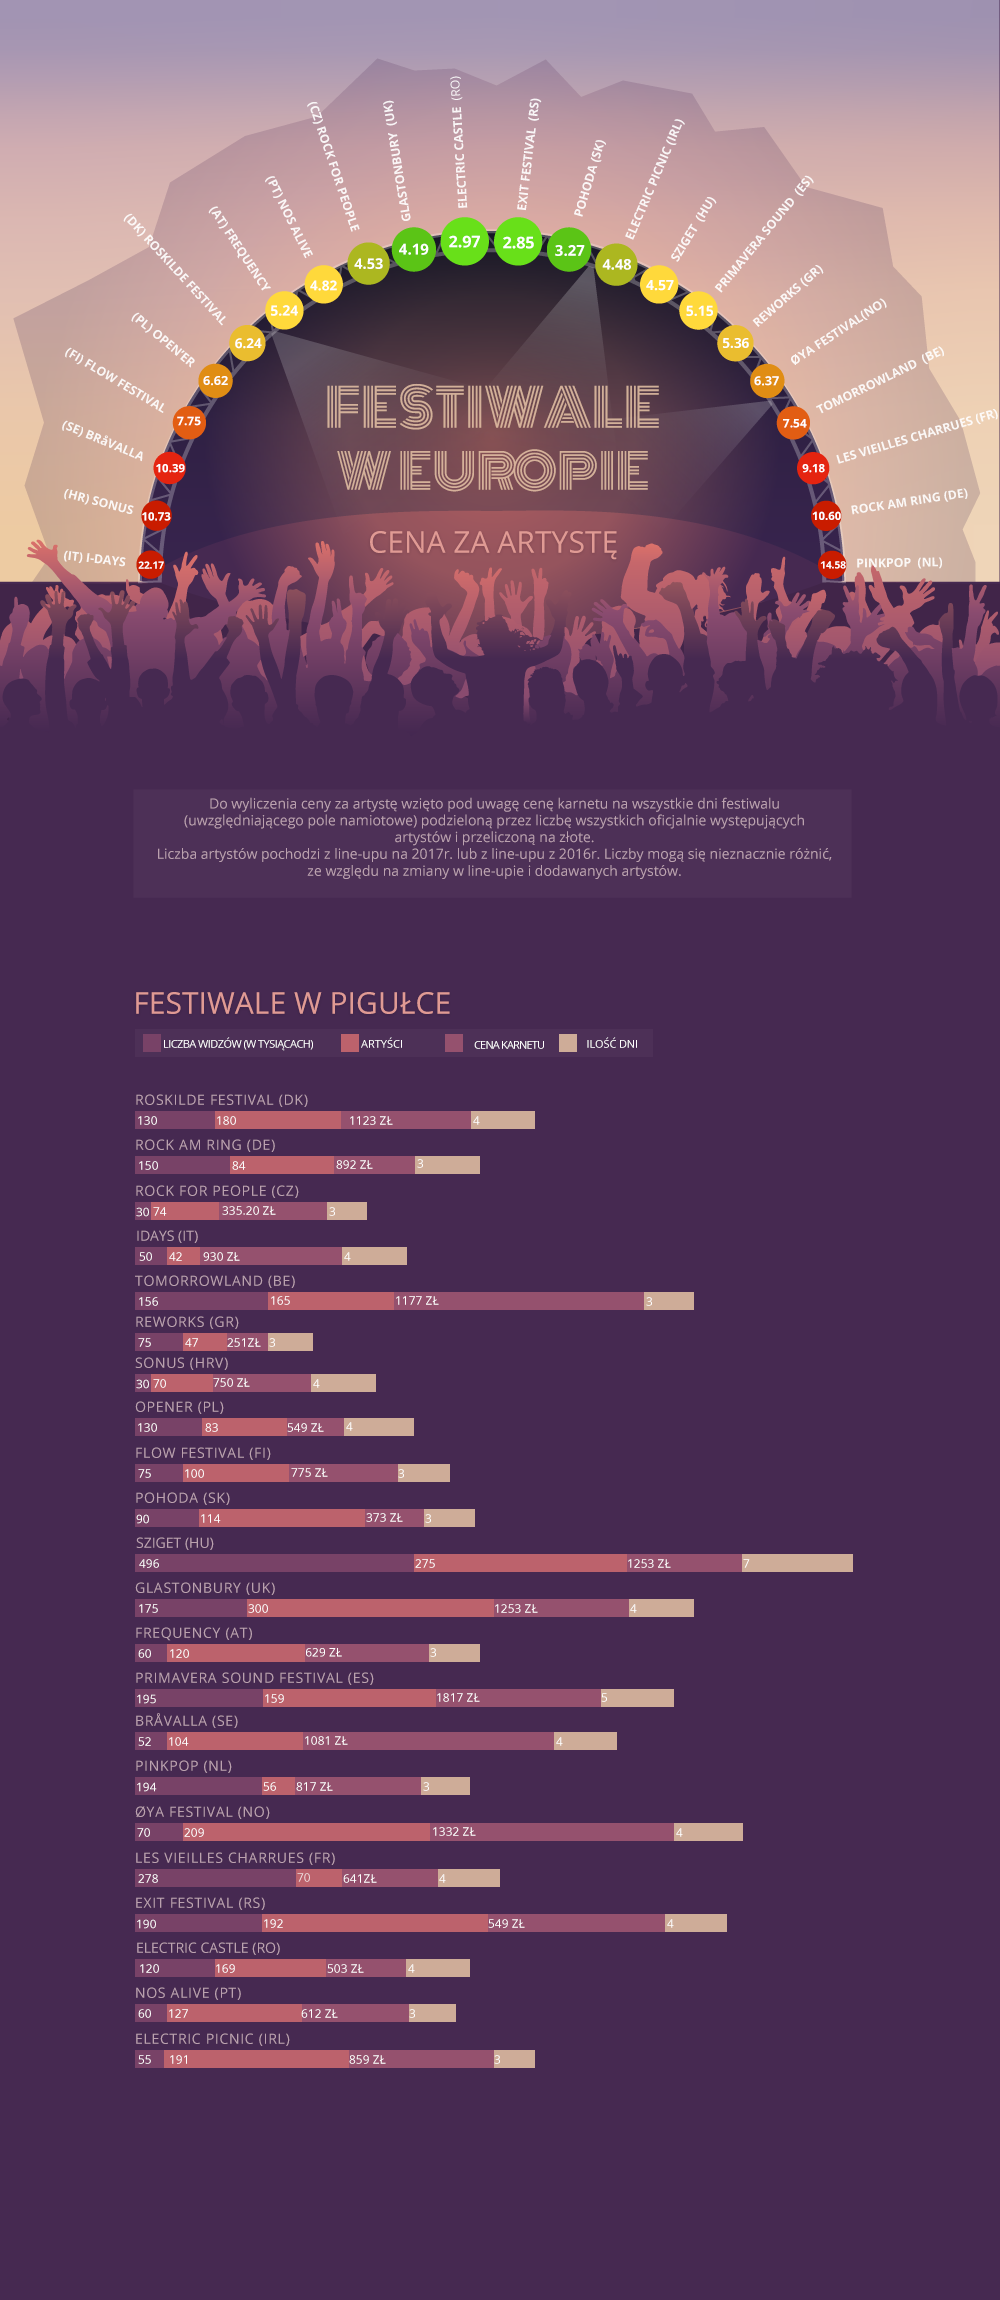 Festiwale w Europie